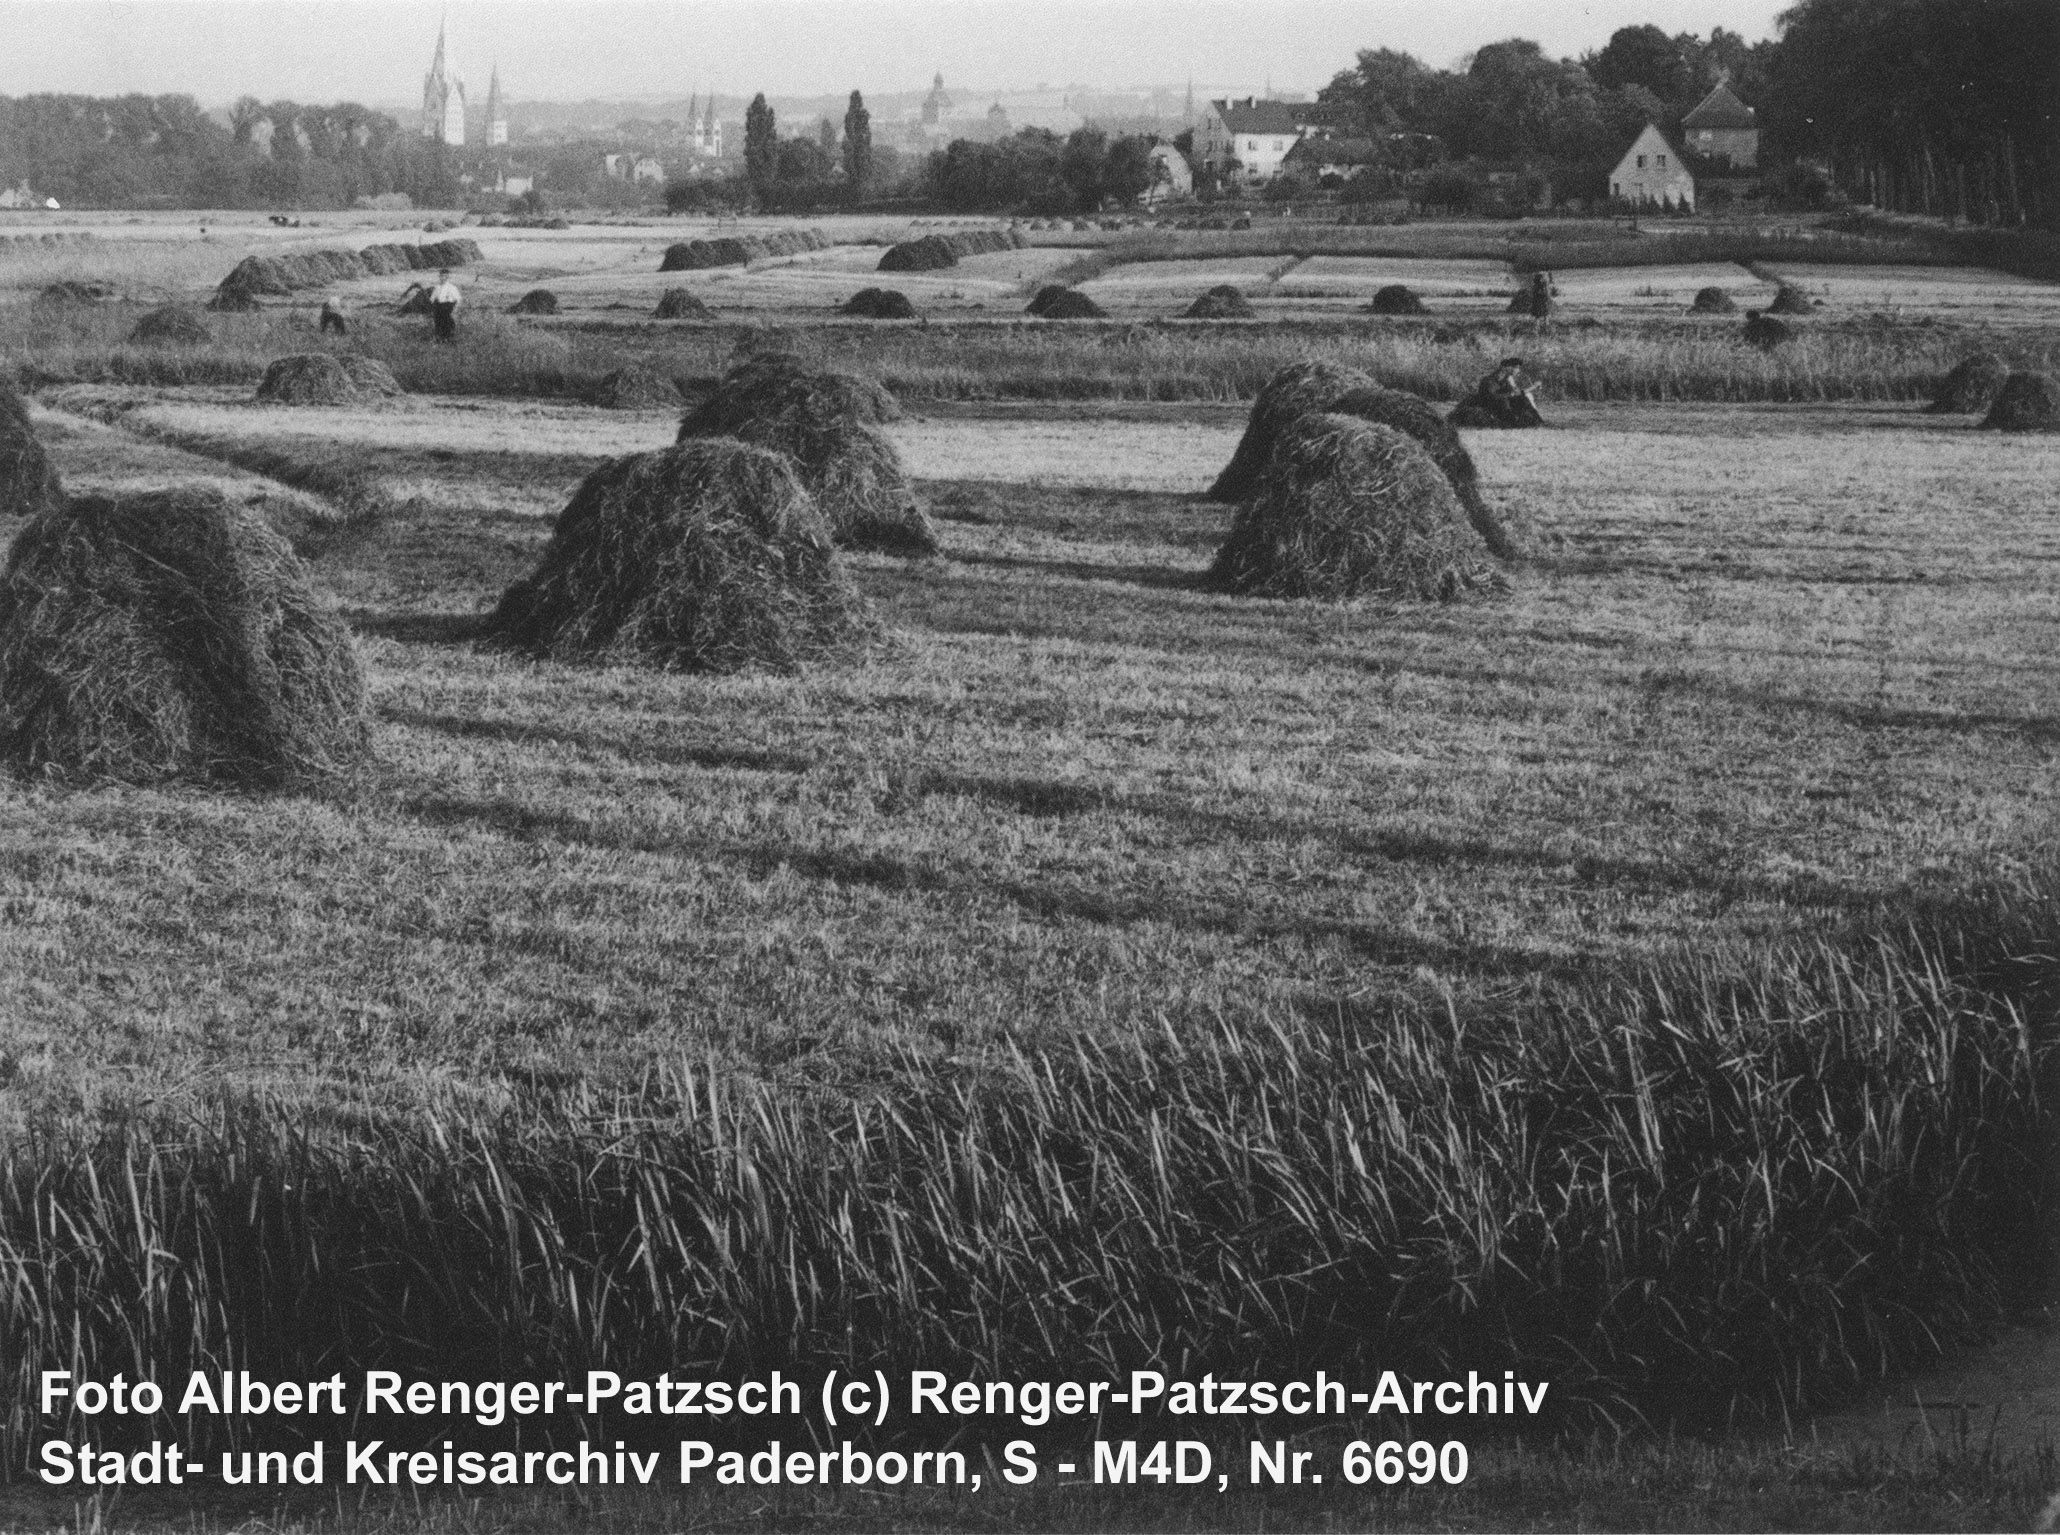 Heuernte auf den Paderwiesen, um 1940 (Kreis- und StadtA Pb, Foto Ferdinand Sieweke, S - M5/01GD, Nr. 136)